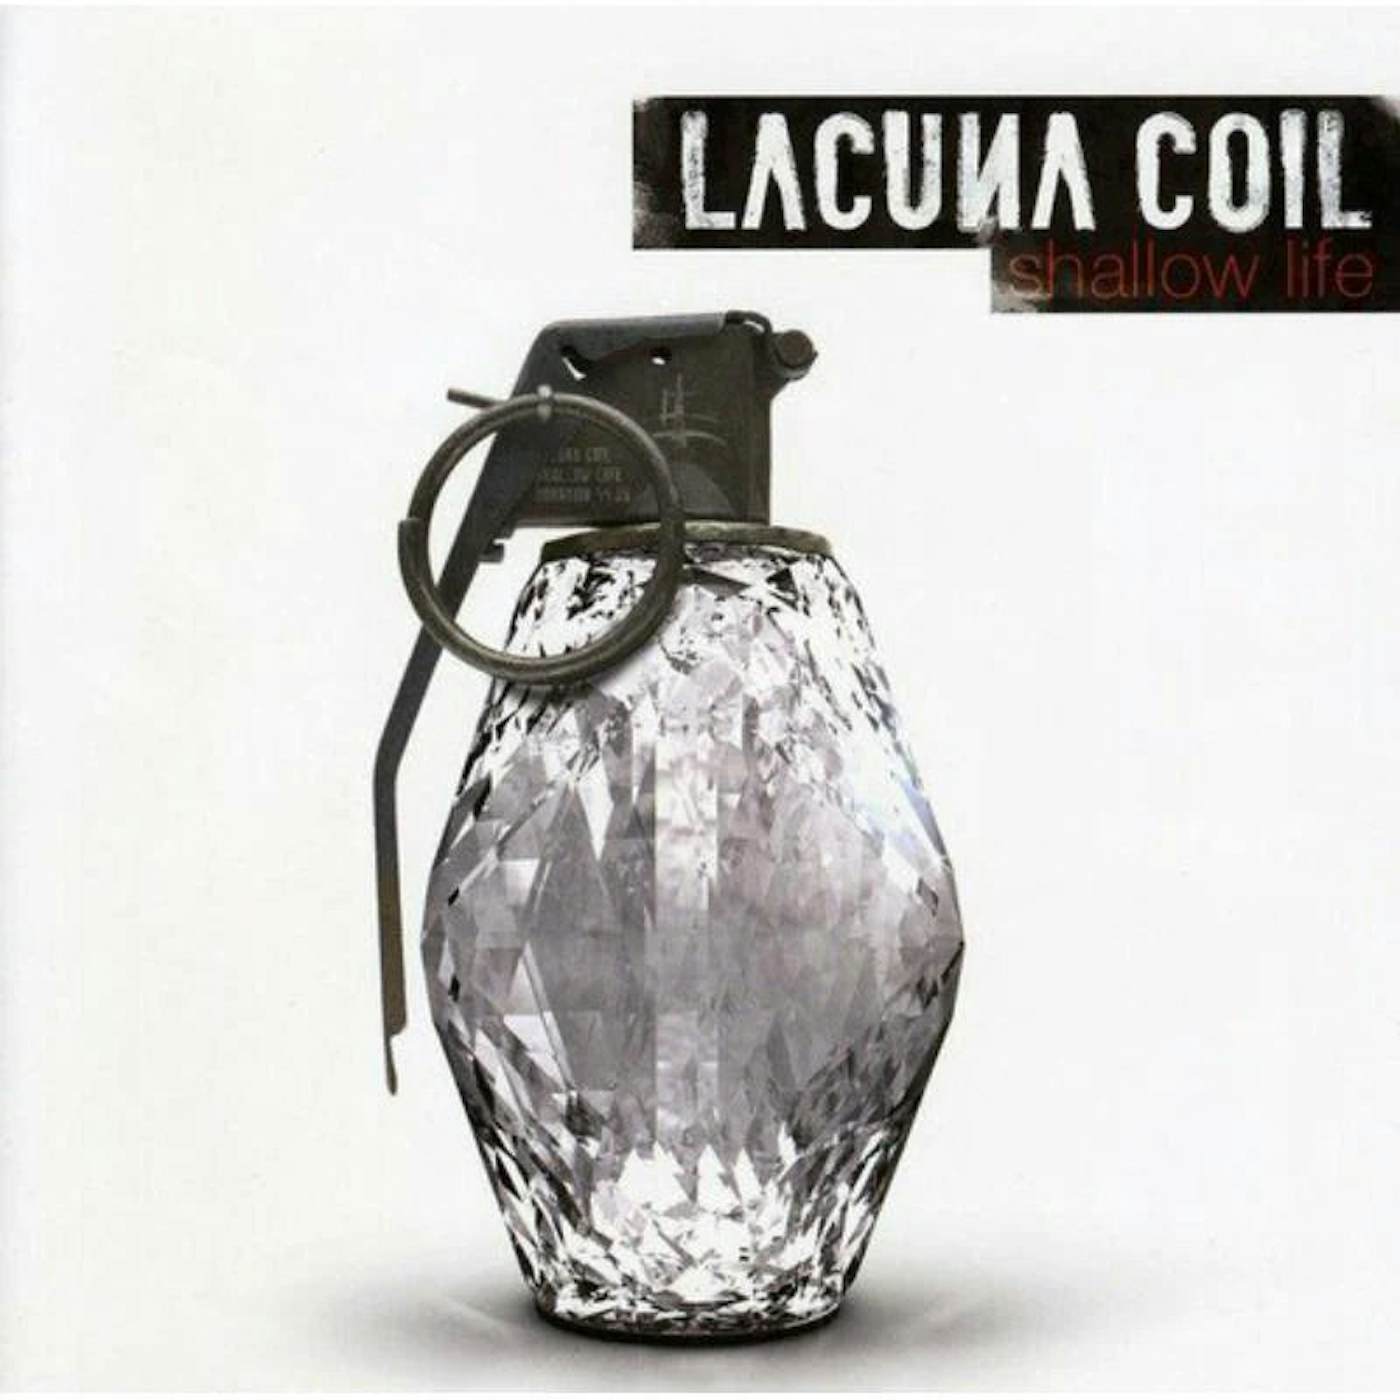 Lacuna Coil LP - Shallow Life (Vinyl)